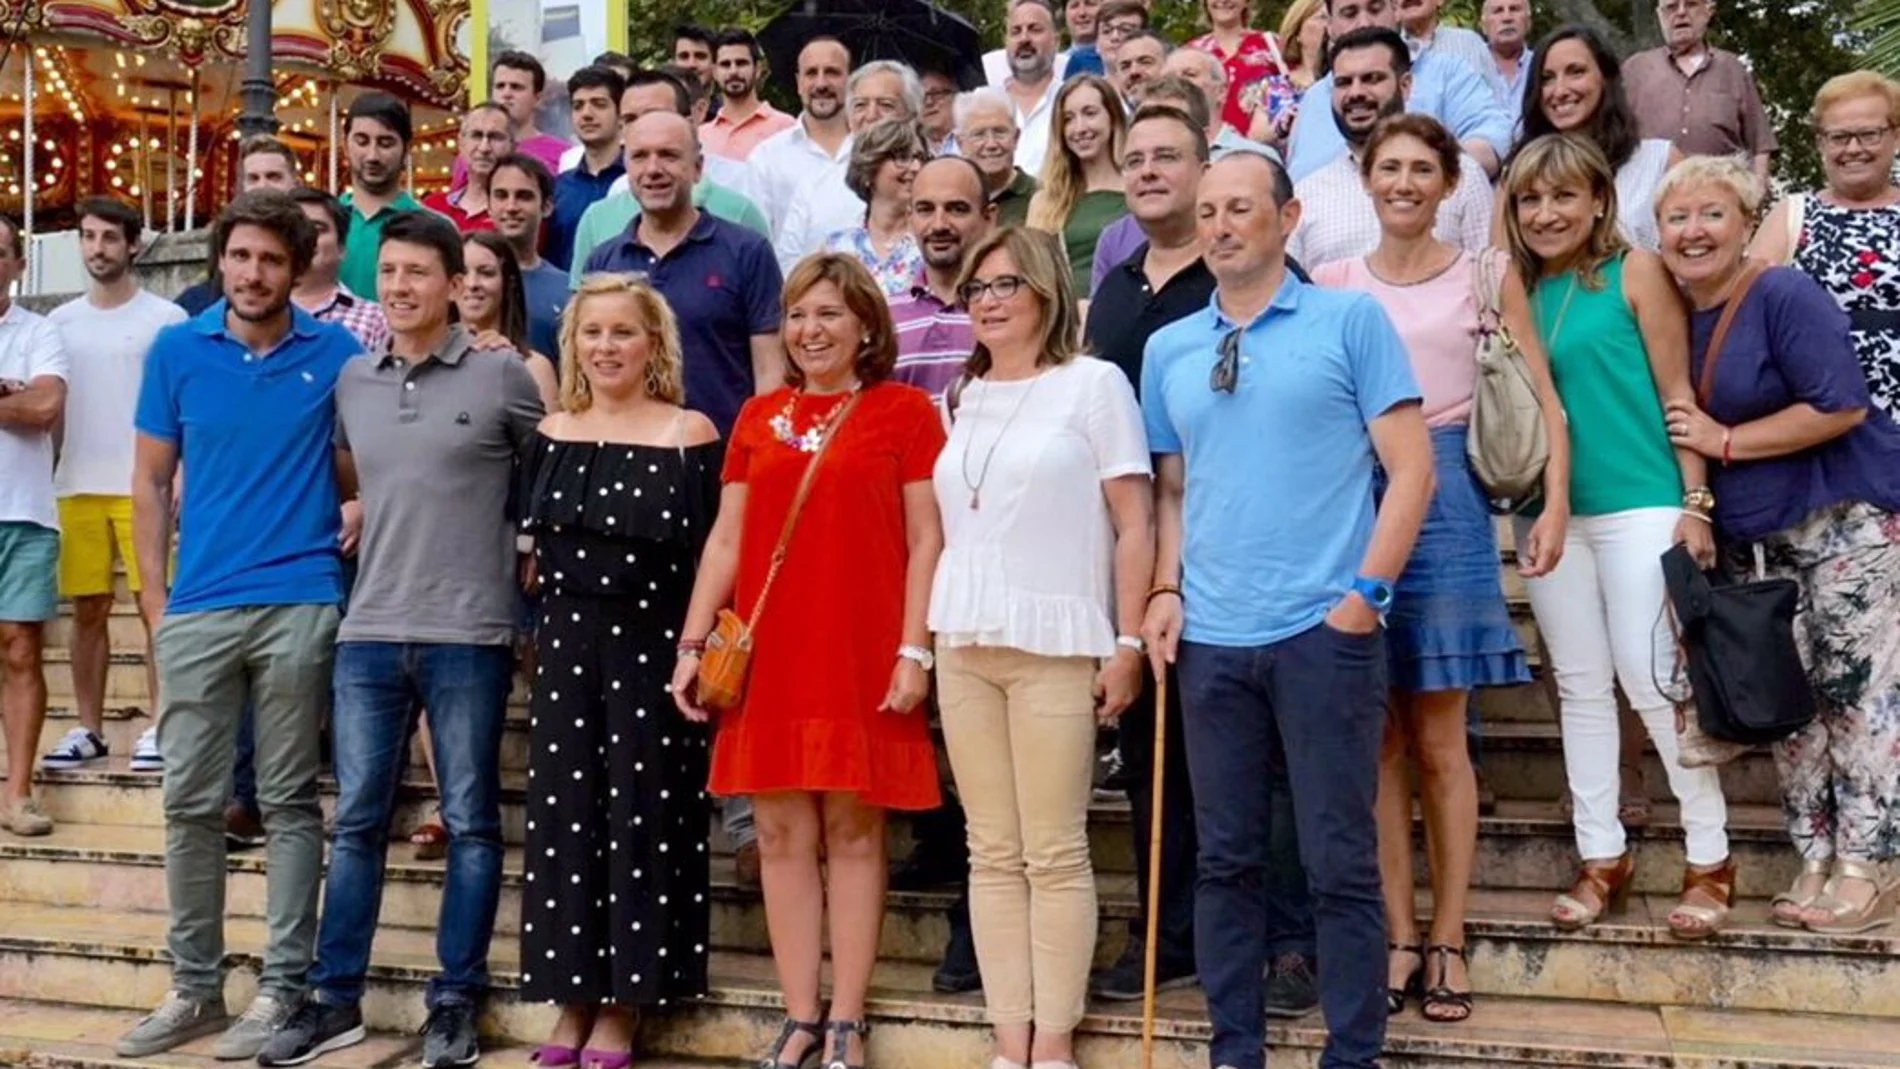 La presidenta del PPCV, Isabel Bonig, visitó ayer la tradicional feria de Xàtiva, donde cuestionó la actuación de la Generalitat con respecto al incendio en Llutxent que arrasó más de 3.200 hectáreas la semana pasada/La Razón